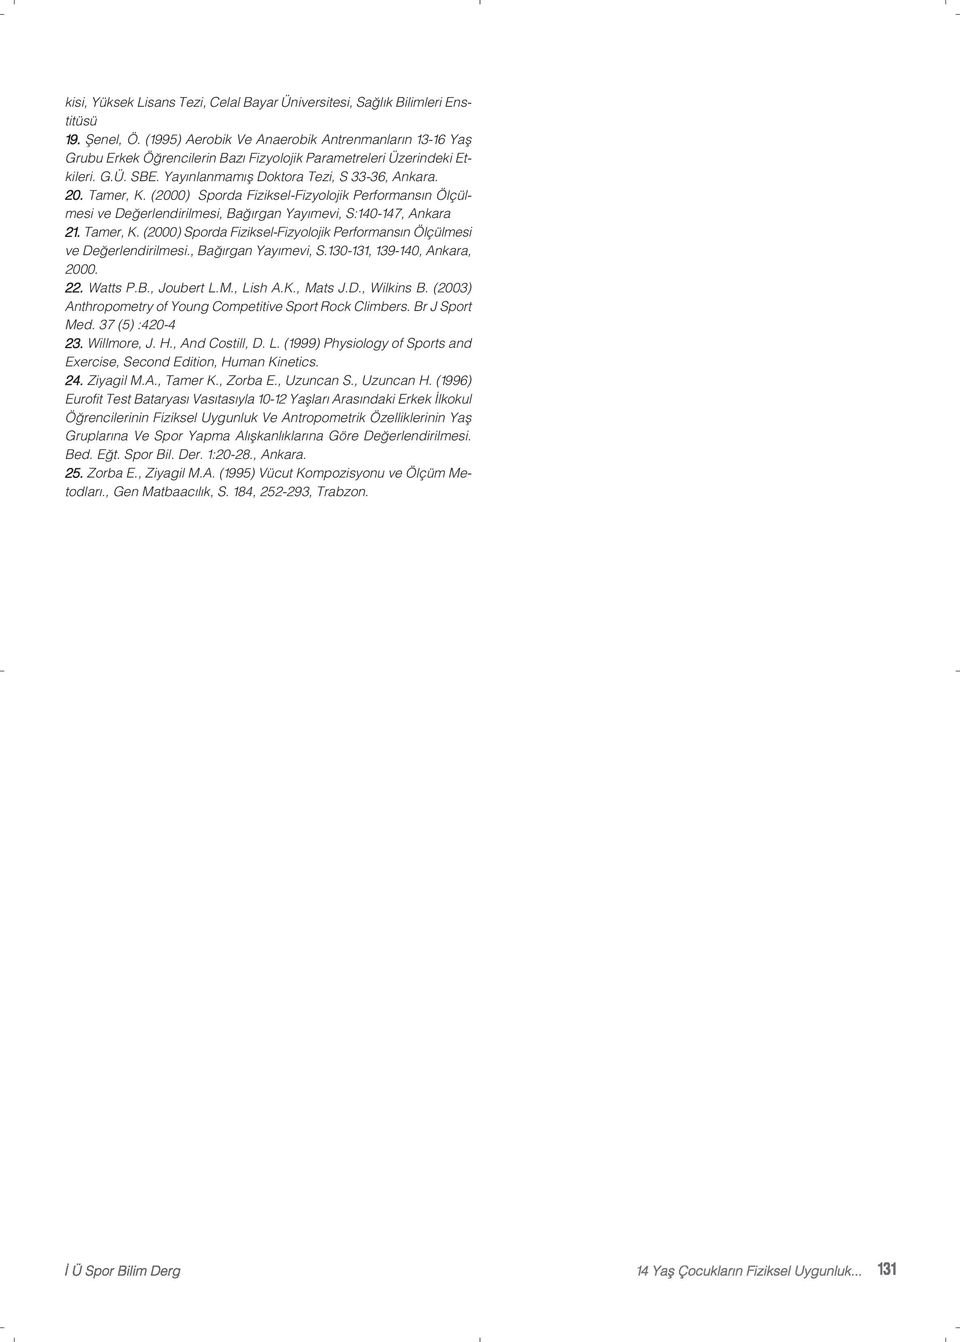 (2000) Sporda Fiziksel-Fizyolojik Performansın Ölçülmesi ve Değerlendirilmesi, Bağırgan Yayımevi, S:140-147, Ankara 21. Tamer, K.